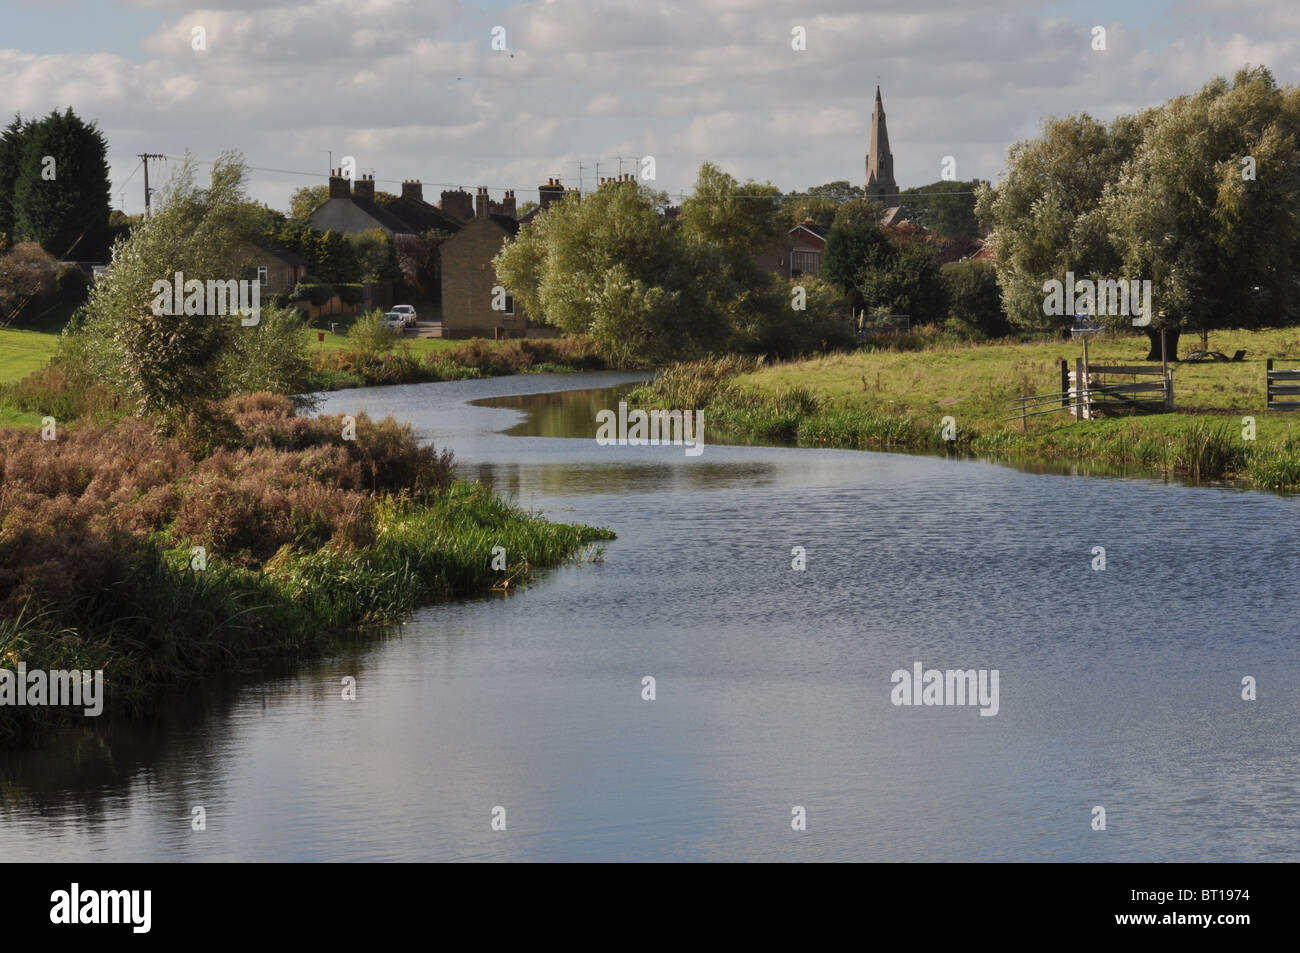 Il fiume Nene a Stanground all'estremità orientale di Peterborough sul bordo del Cambridgeshire Fens, UK. Foto Stock